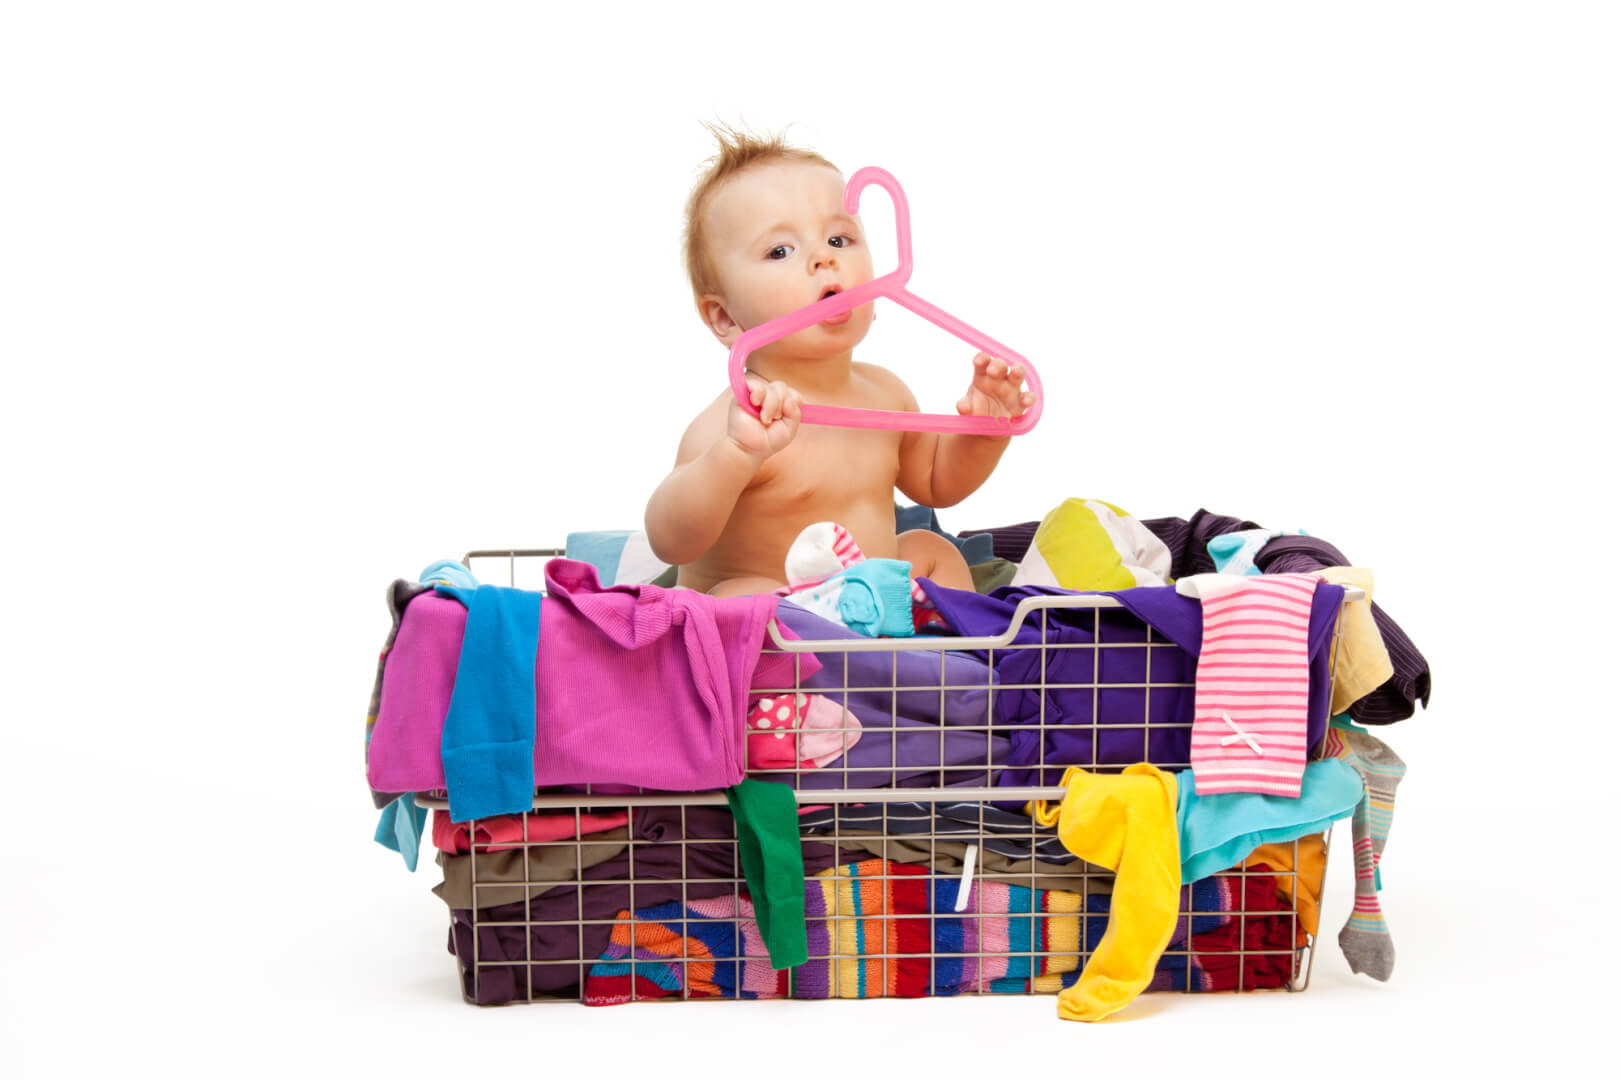 Børnetøj afbetaling Udsæt nemt betalingen af børnetøj